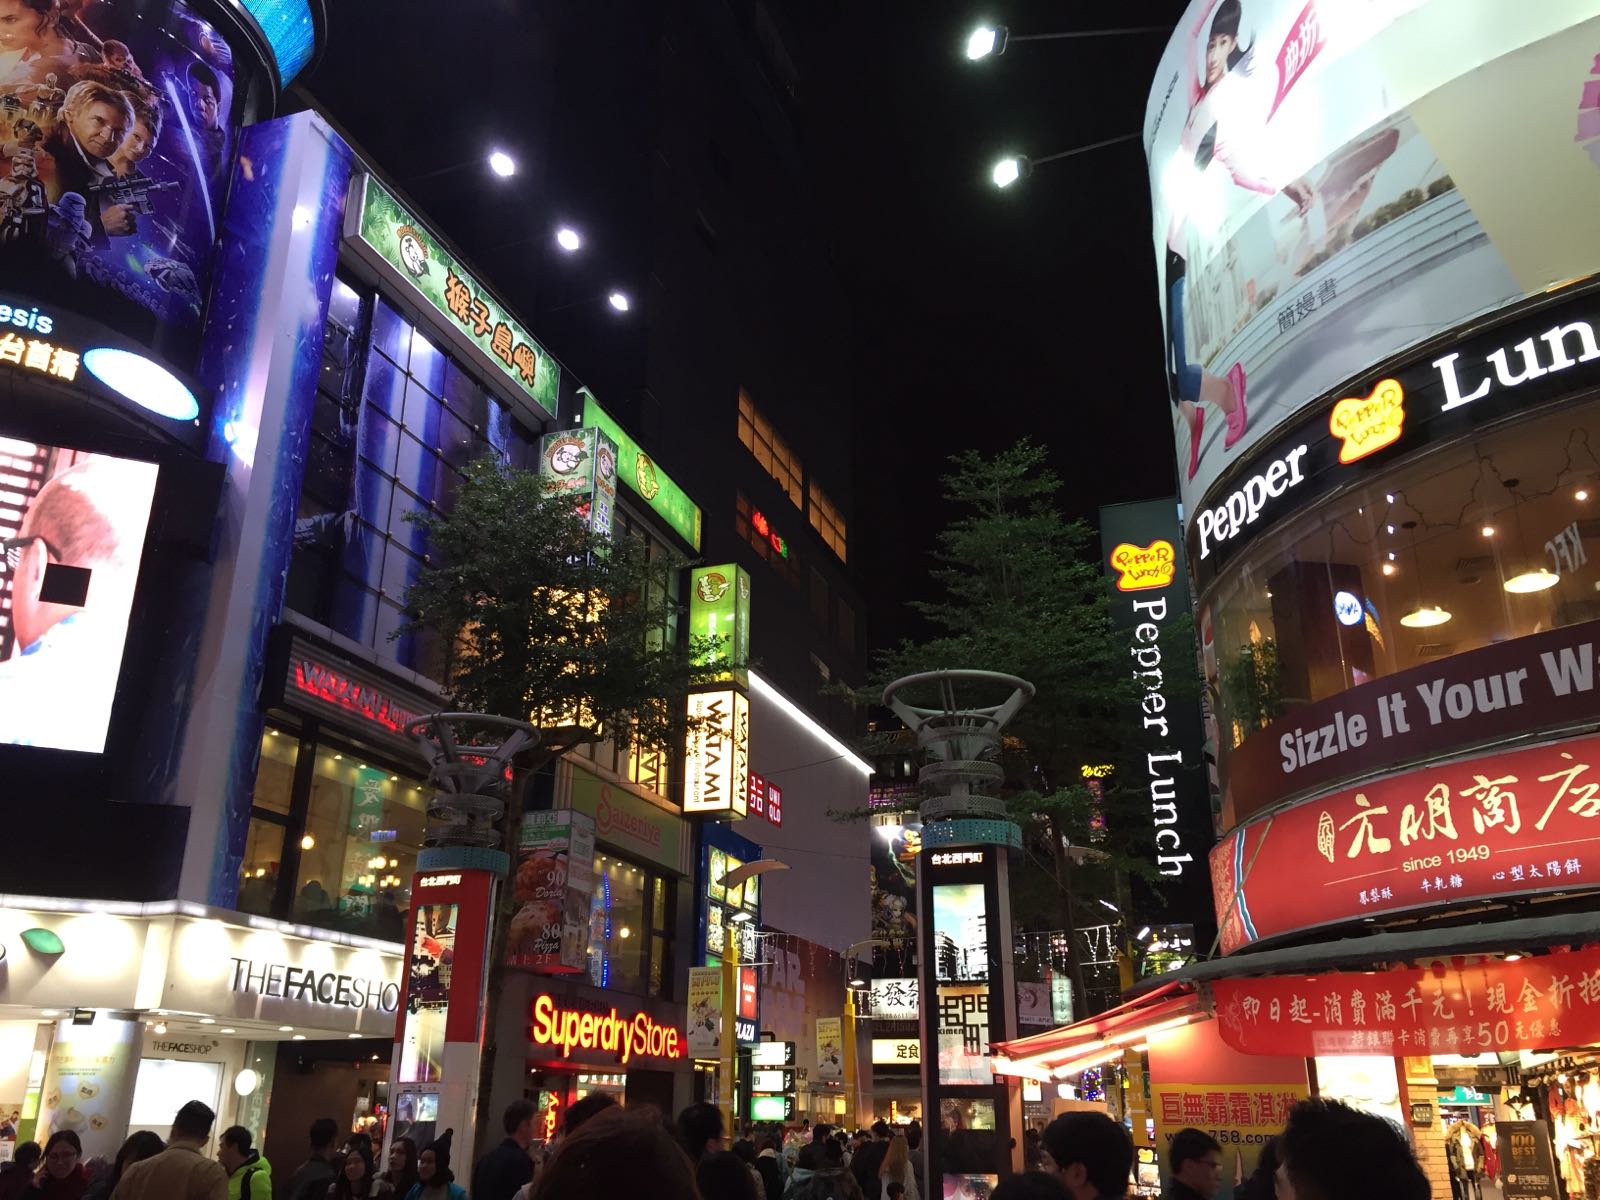 西门町街头非常繁华，会让我一度感觉自己在日本大都市的路口哈哈哈。吃喝玩